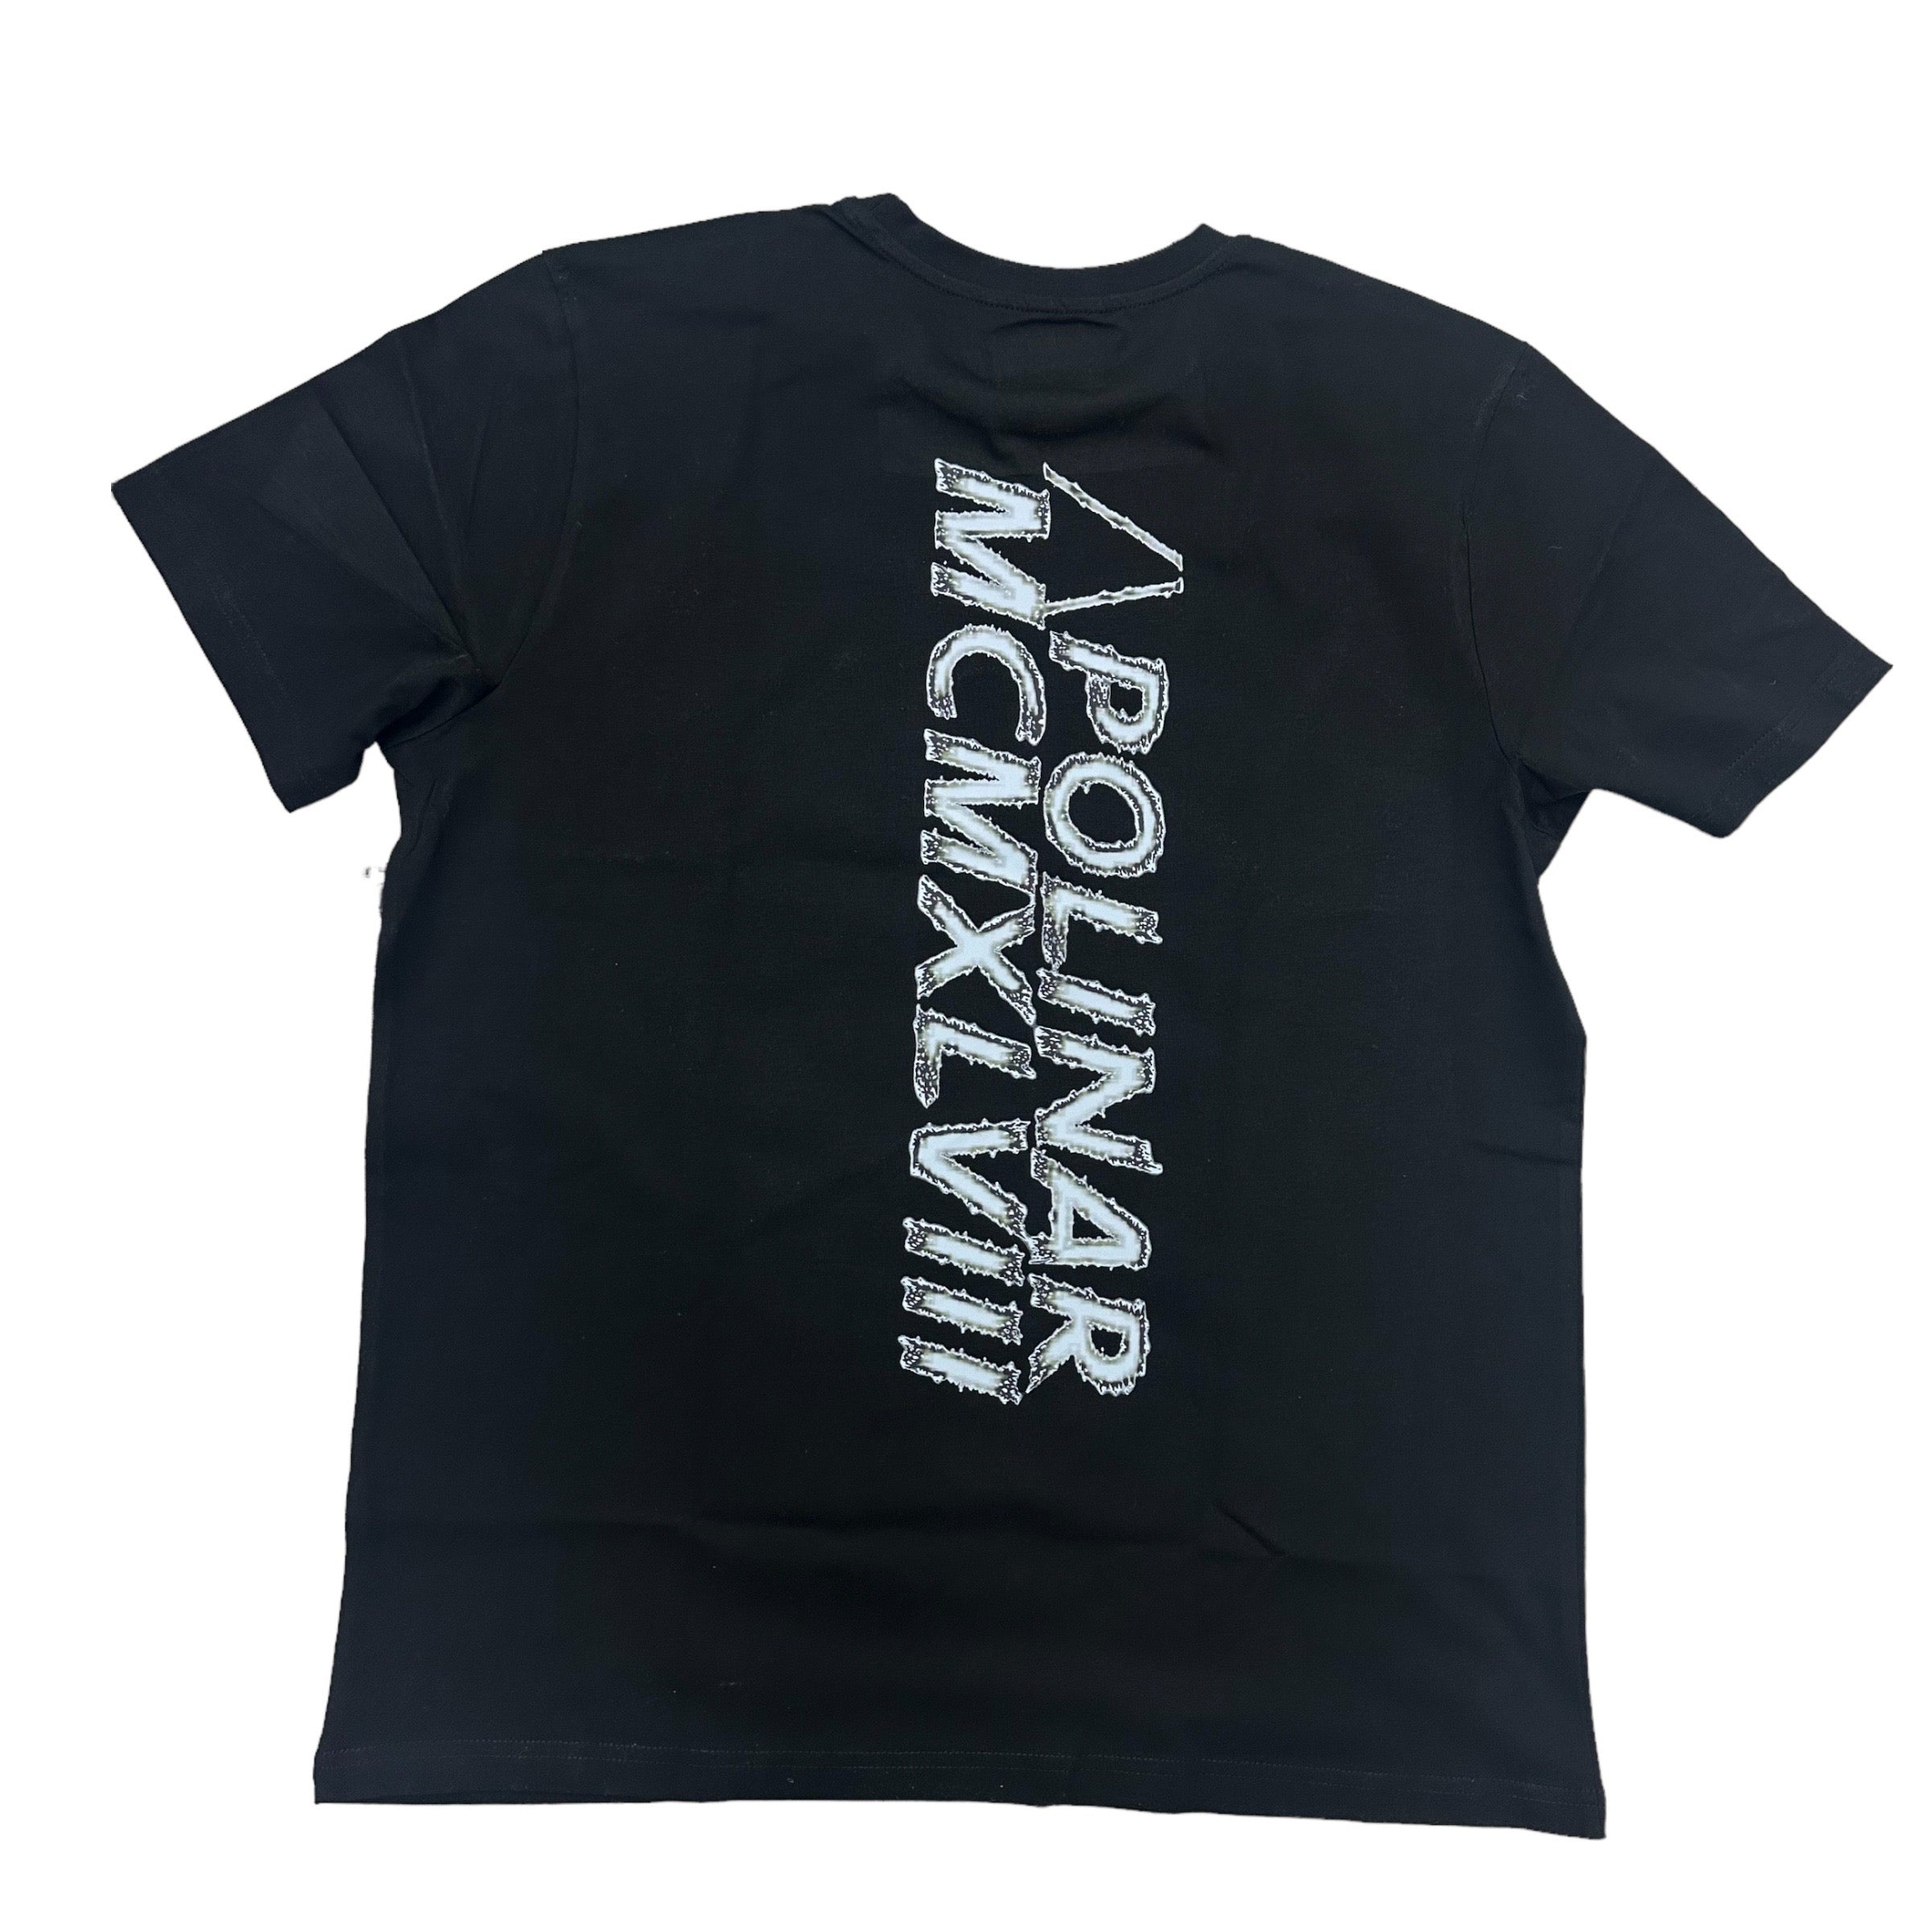 Apo Sim City T-shirt Black